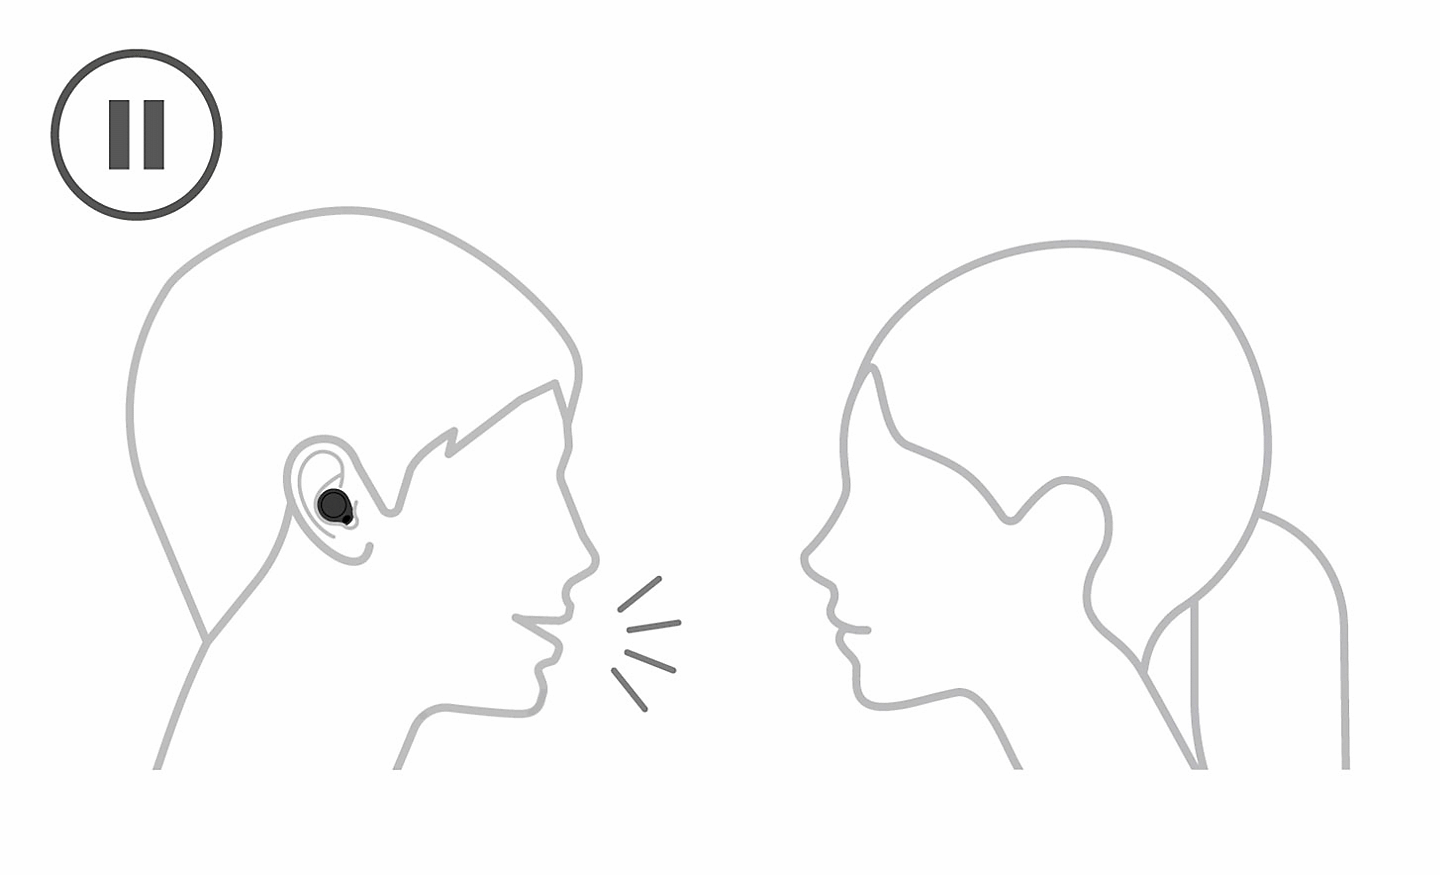 Kresba osoby s nasazenými sluchátky, která hovoří s osobou bez sluchátek. Vlevo nahoře se nachází ikona pro pozastavení